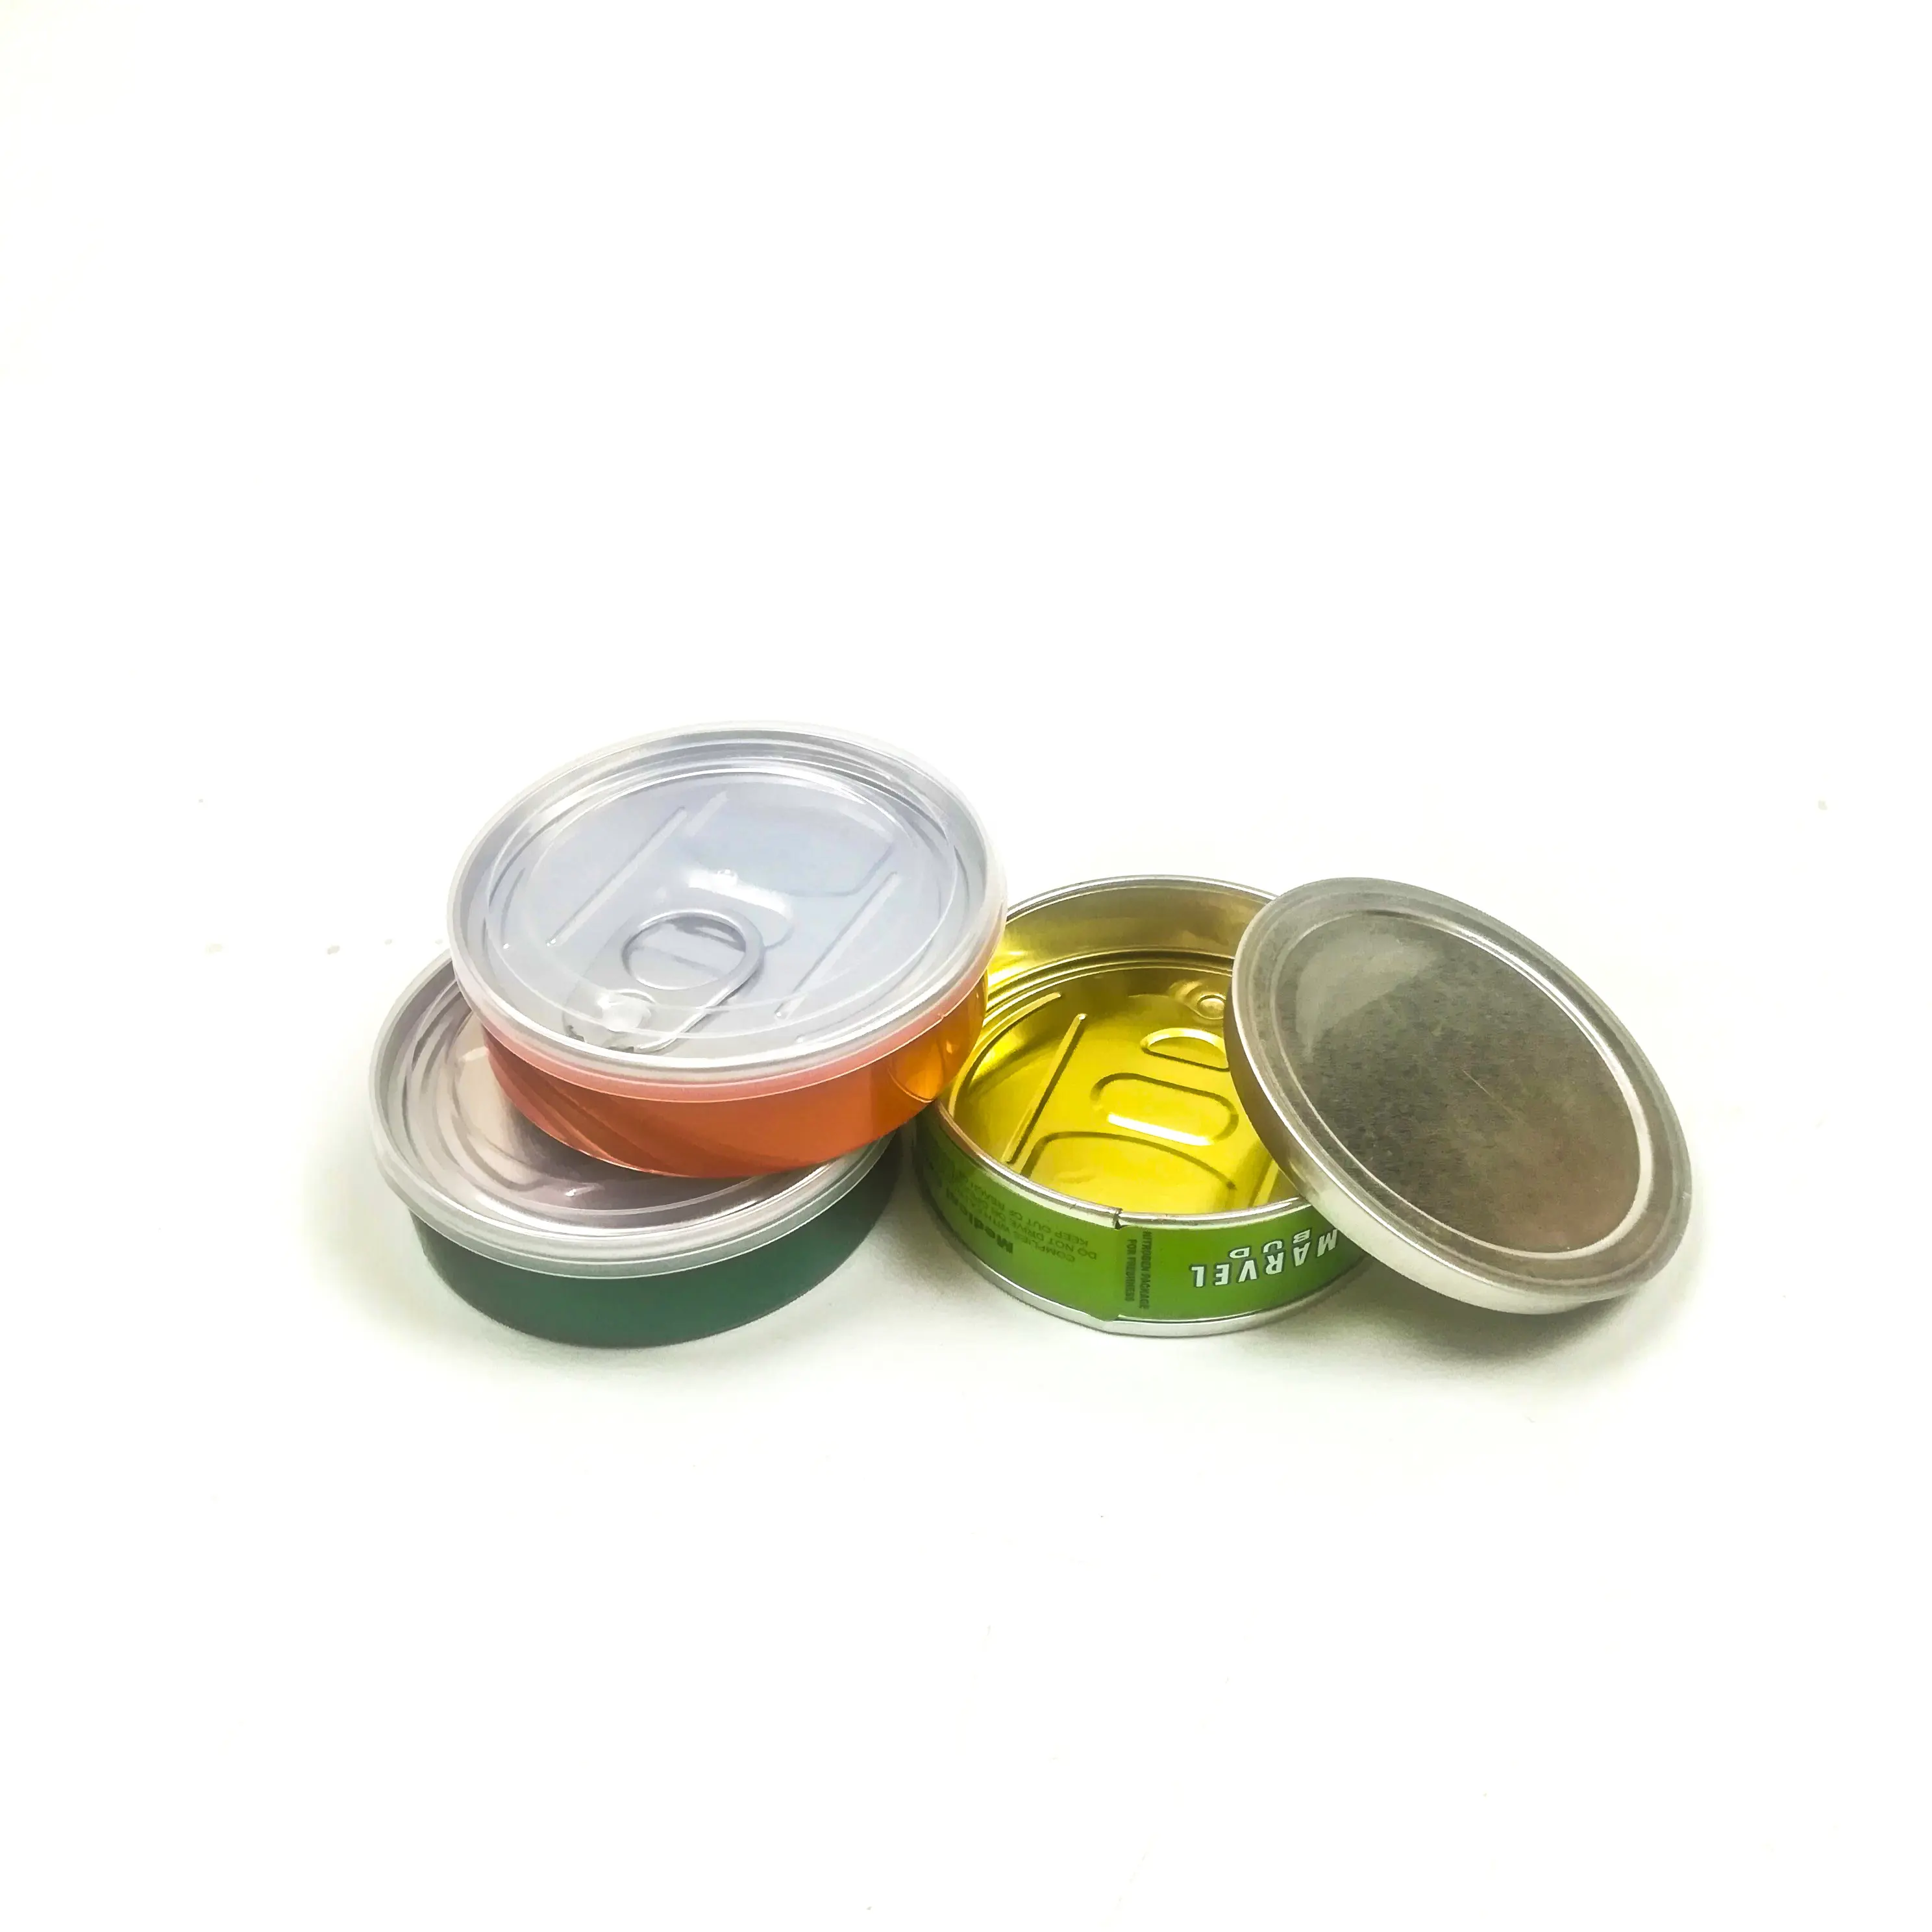 Cali pressitin Tin können 73.3*24mm Tuna Tins mit Stickers Cali Medical Stardawg Tubs Custom Labels Pressitin Aluminum Cans